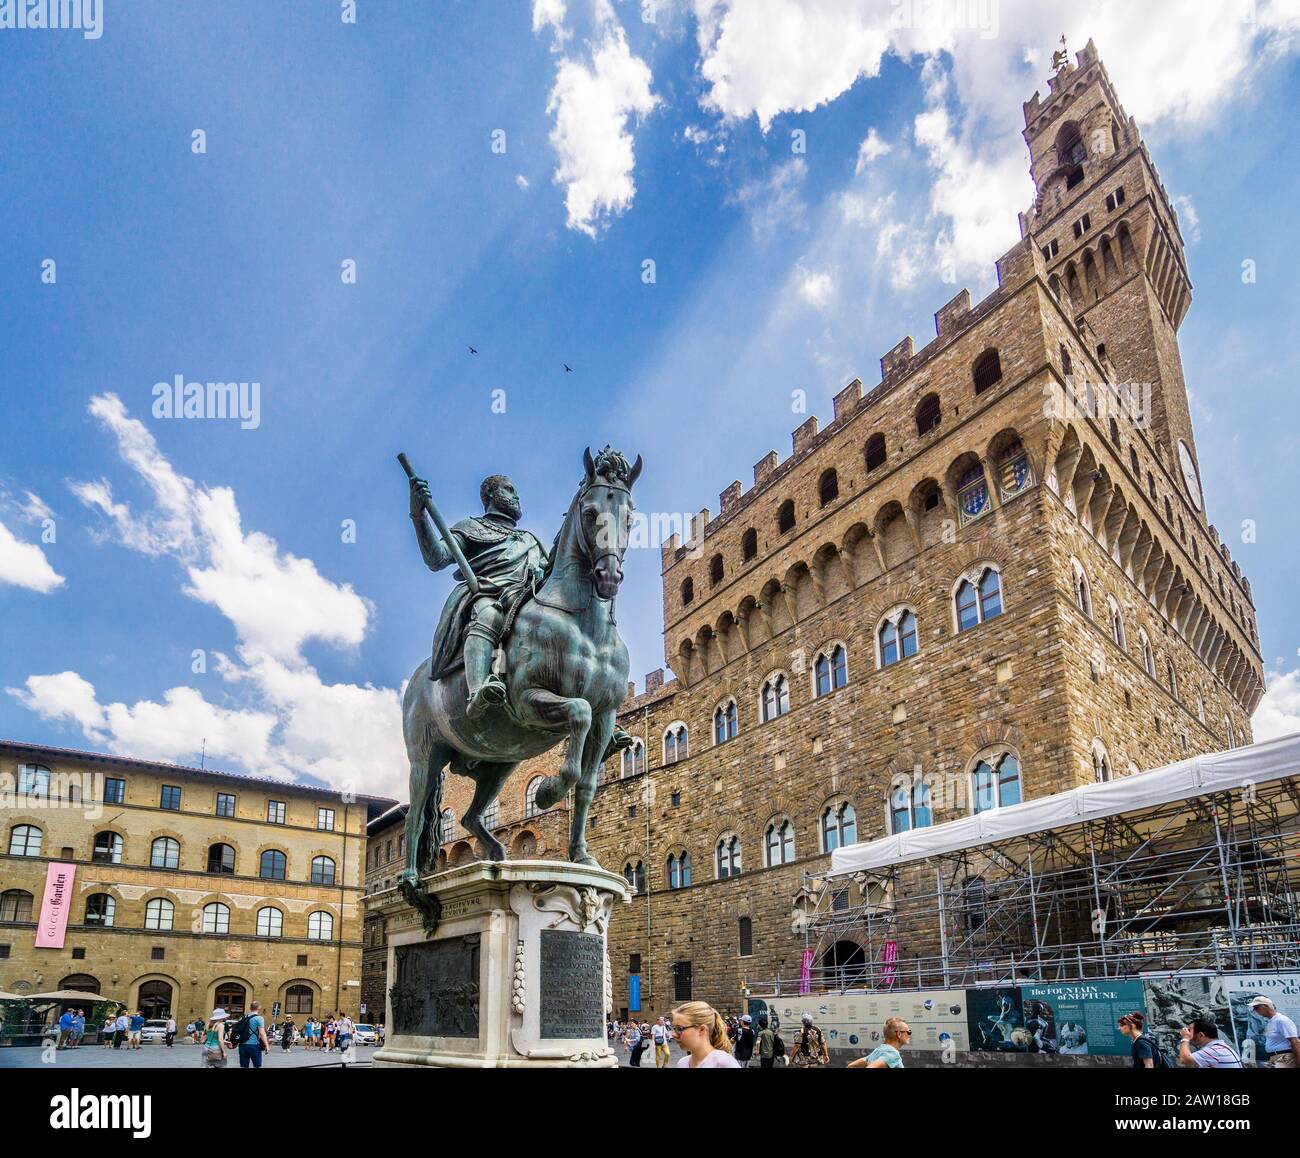 Equestrian statue of Cosimo I at Piazza della Signoria with view of Palazzo Vecchio, Florence, Tuscany, Italy Stock Photo